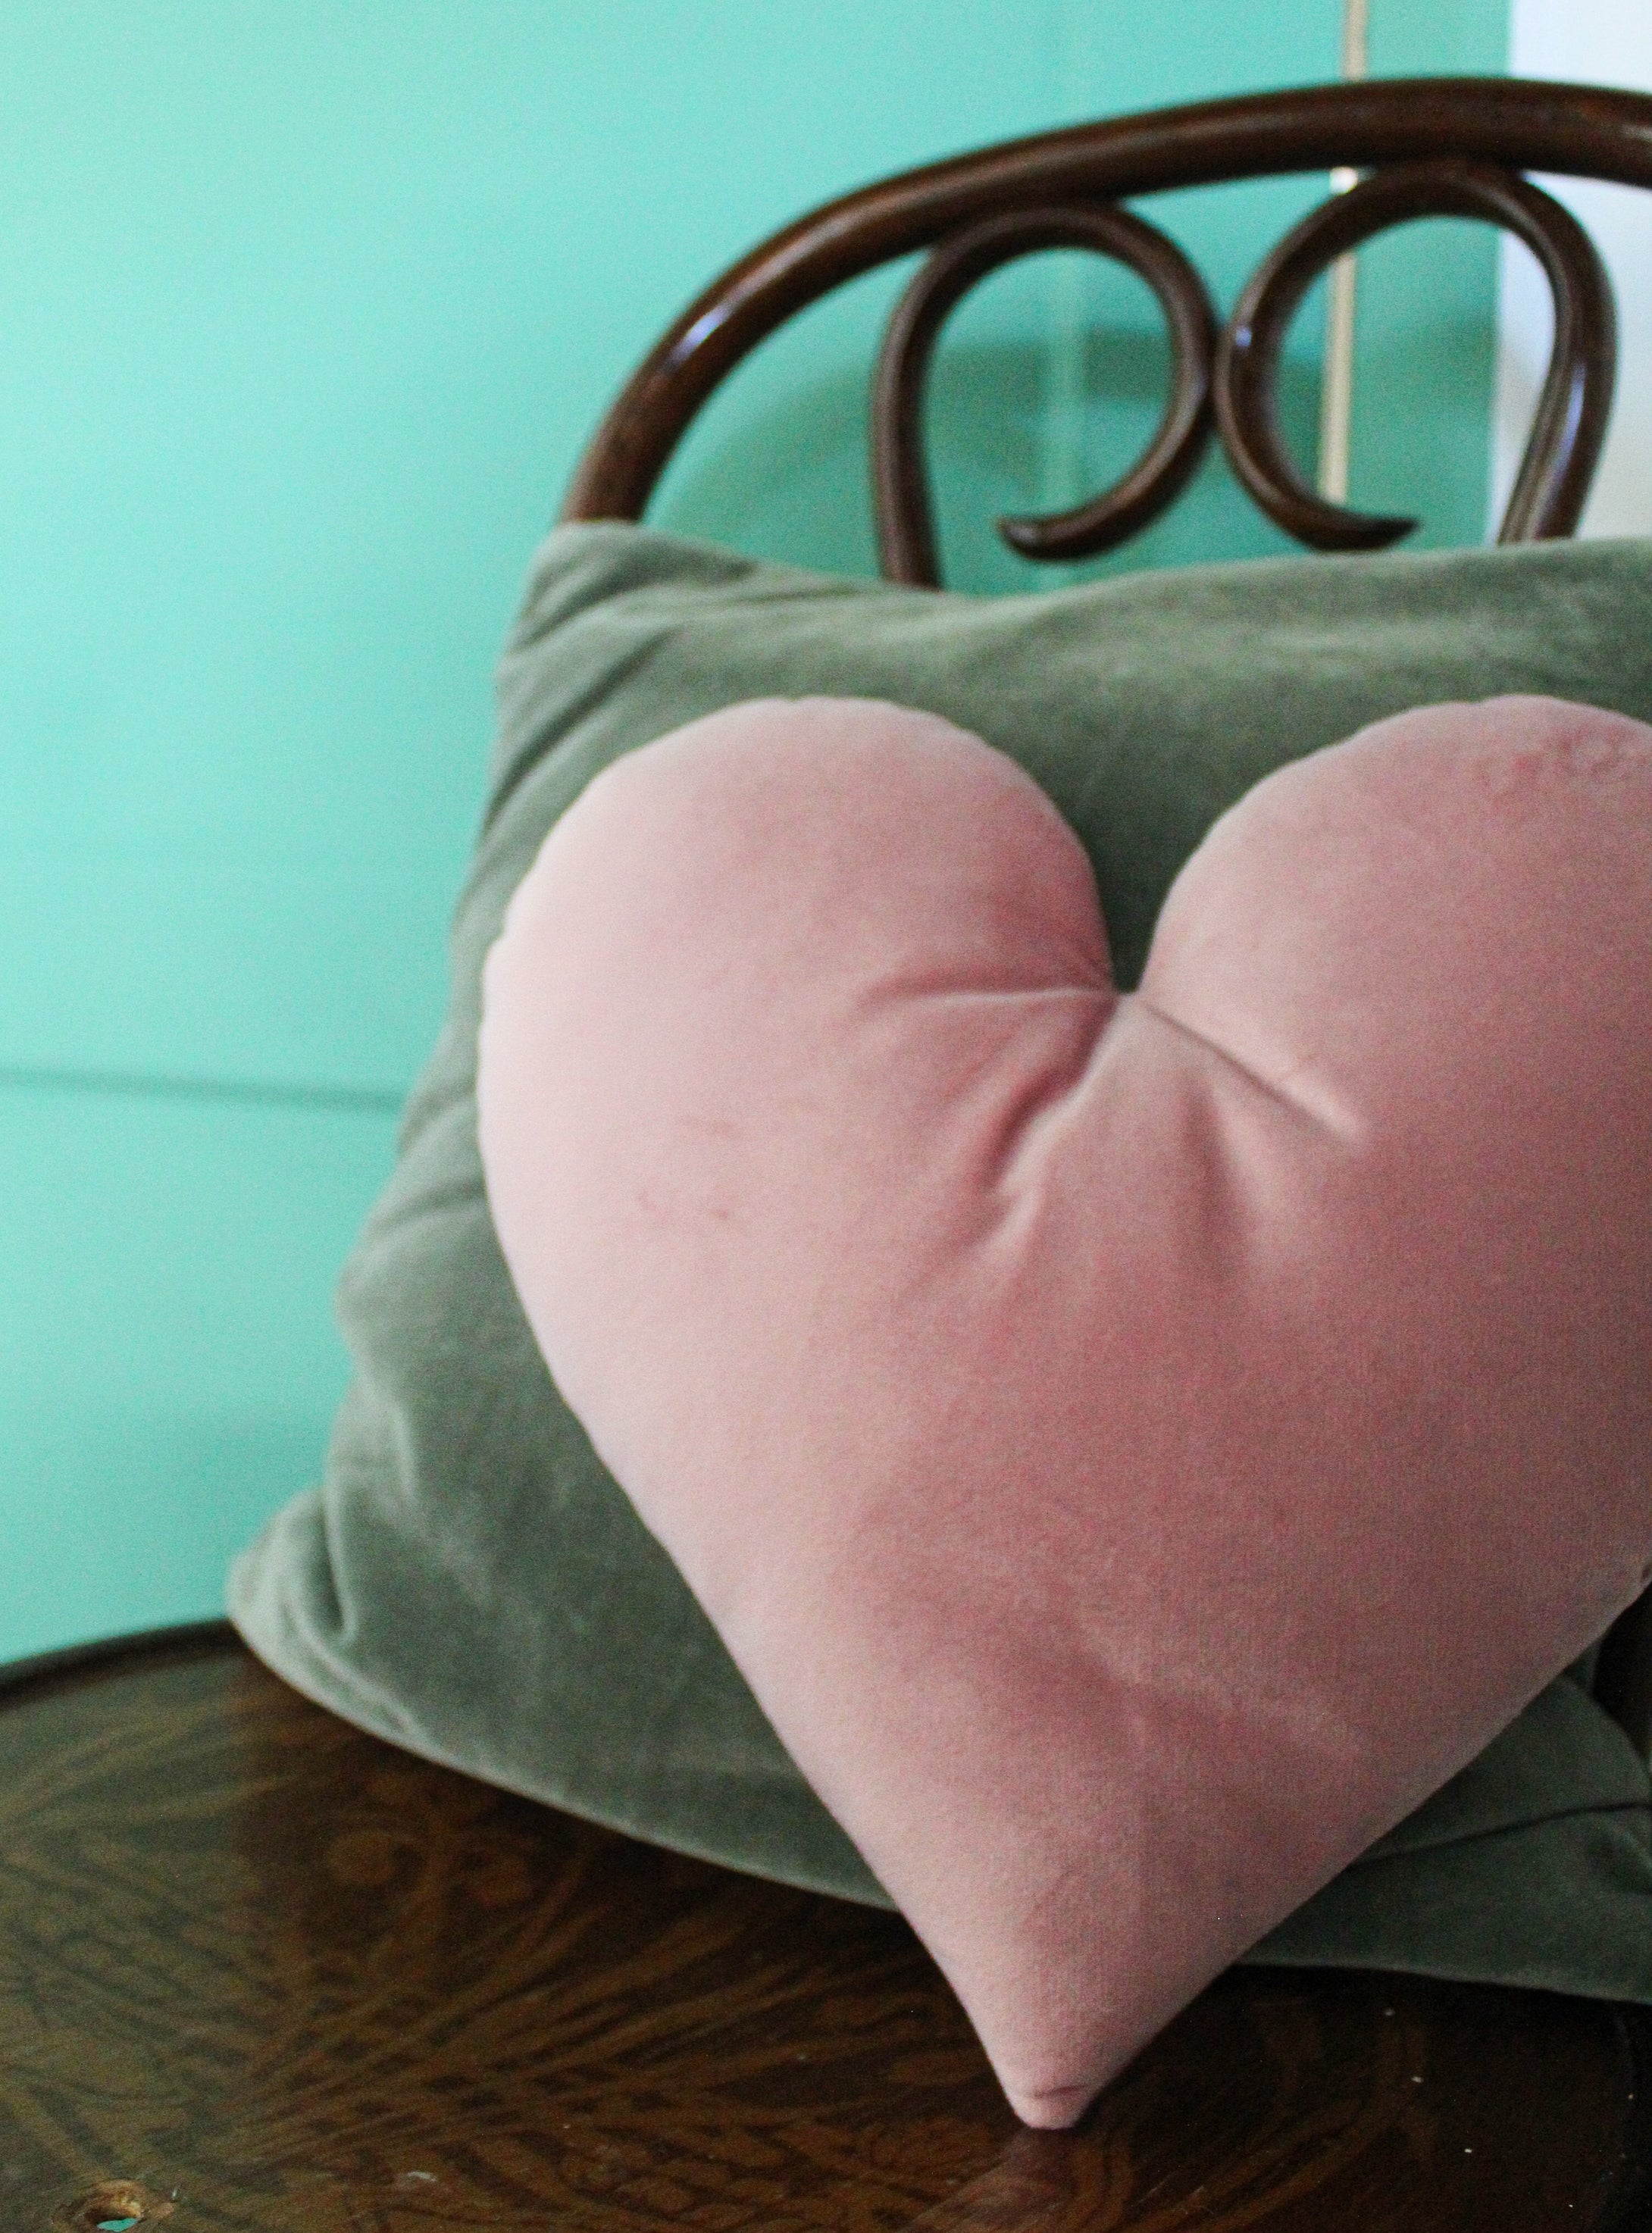 Heart Shaped Pillow Insert Decorative Pillow Insert Heart Shaped